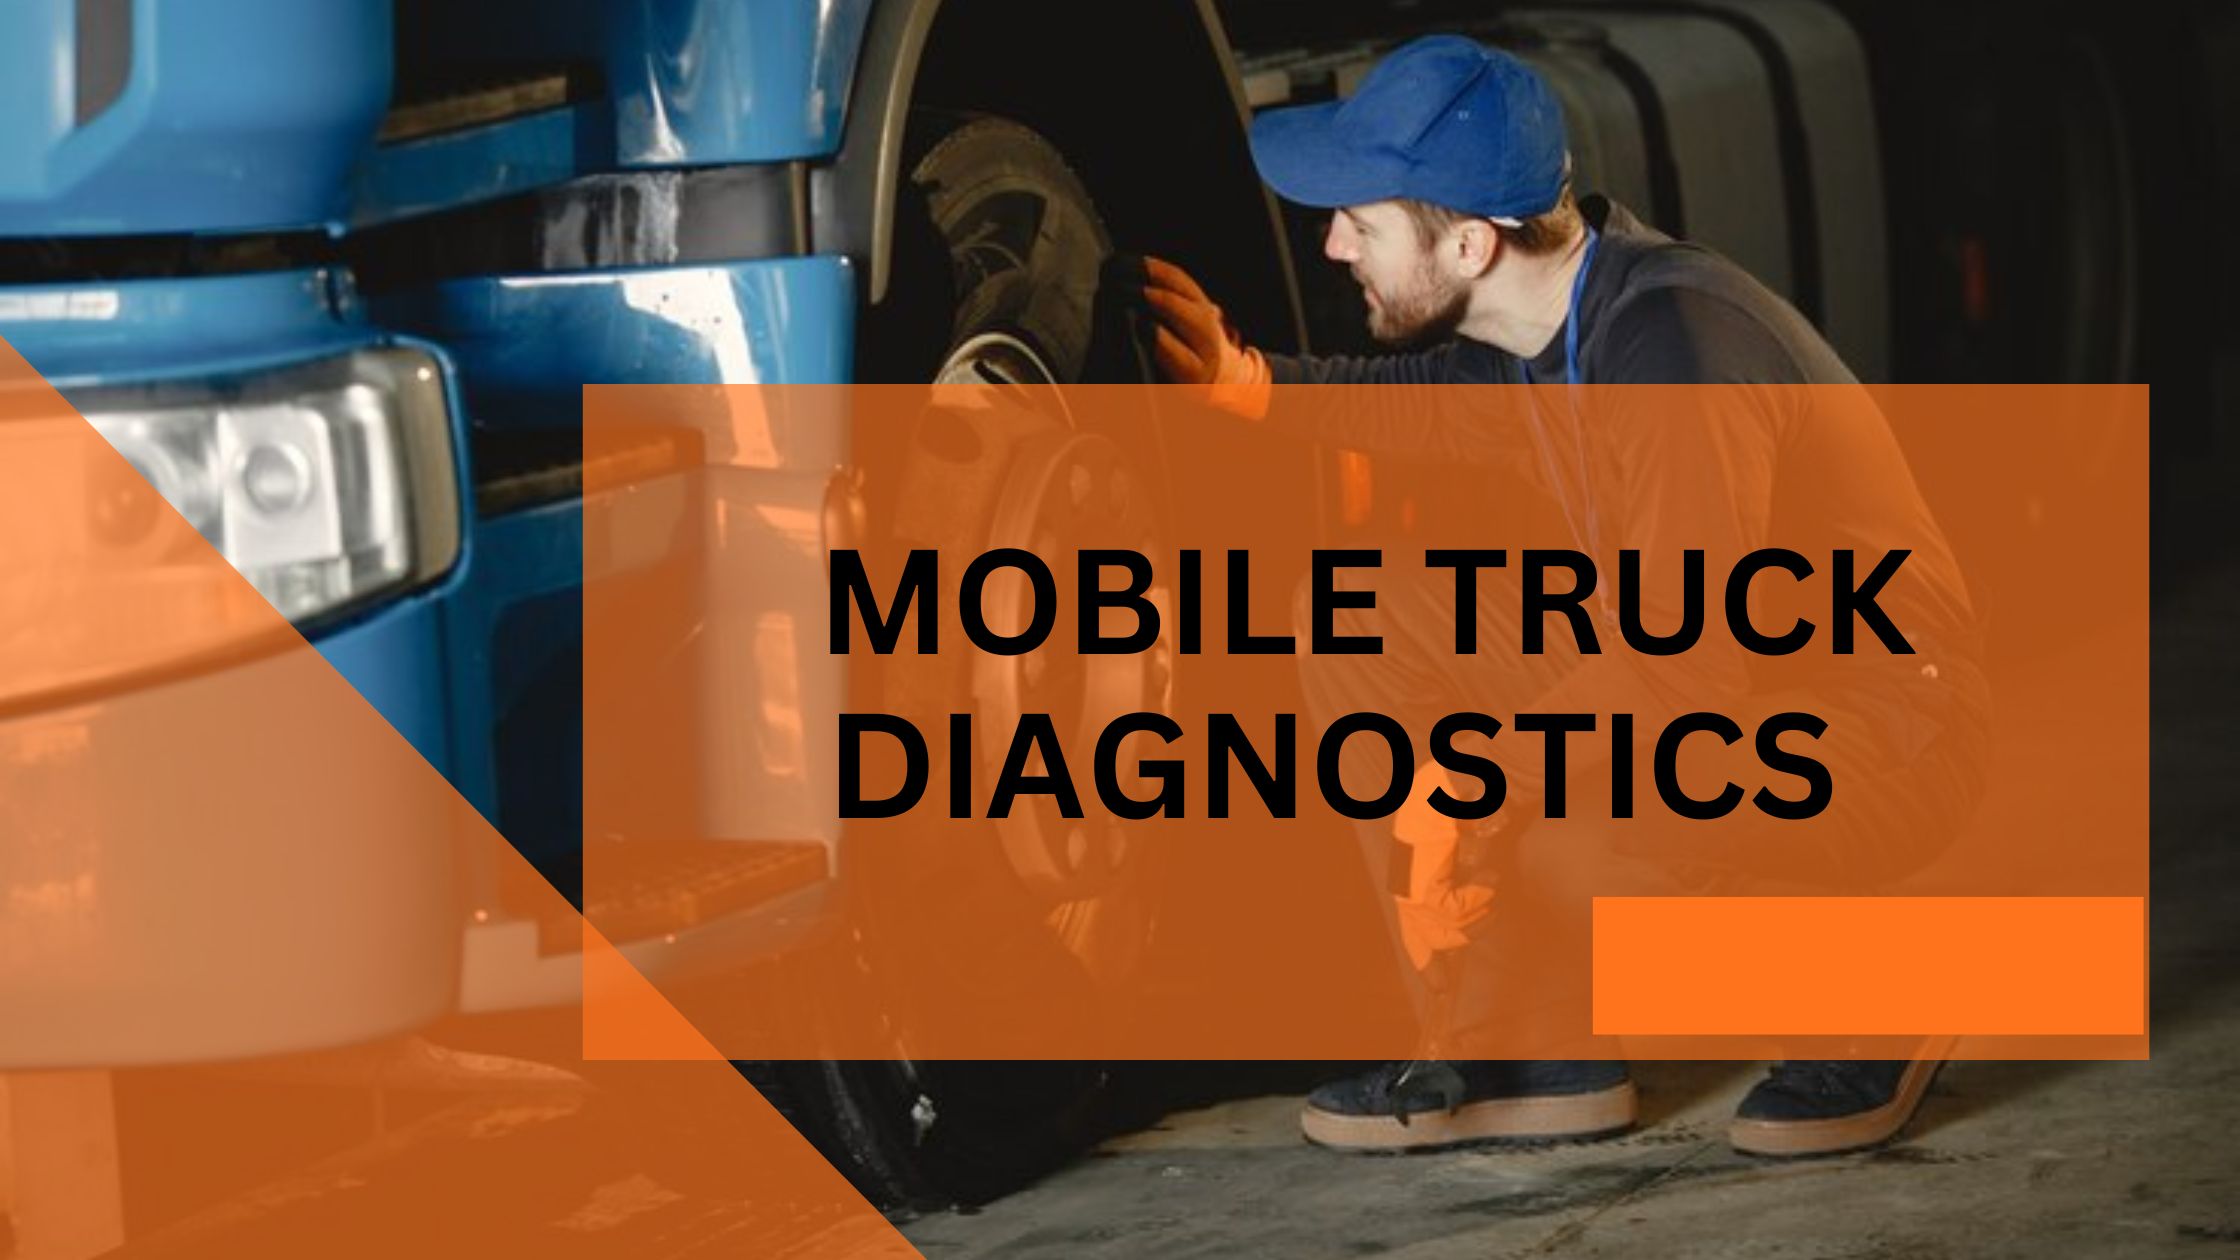 Truck diagnostics services